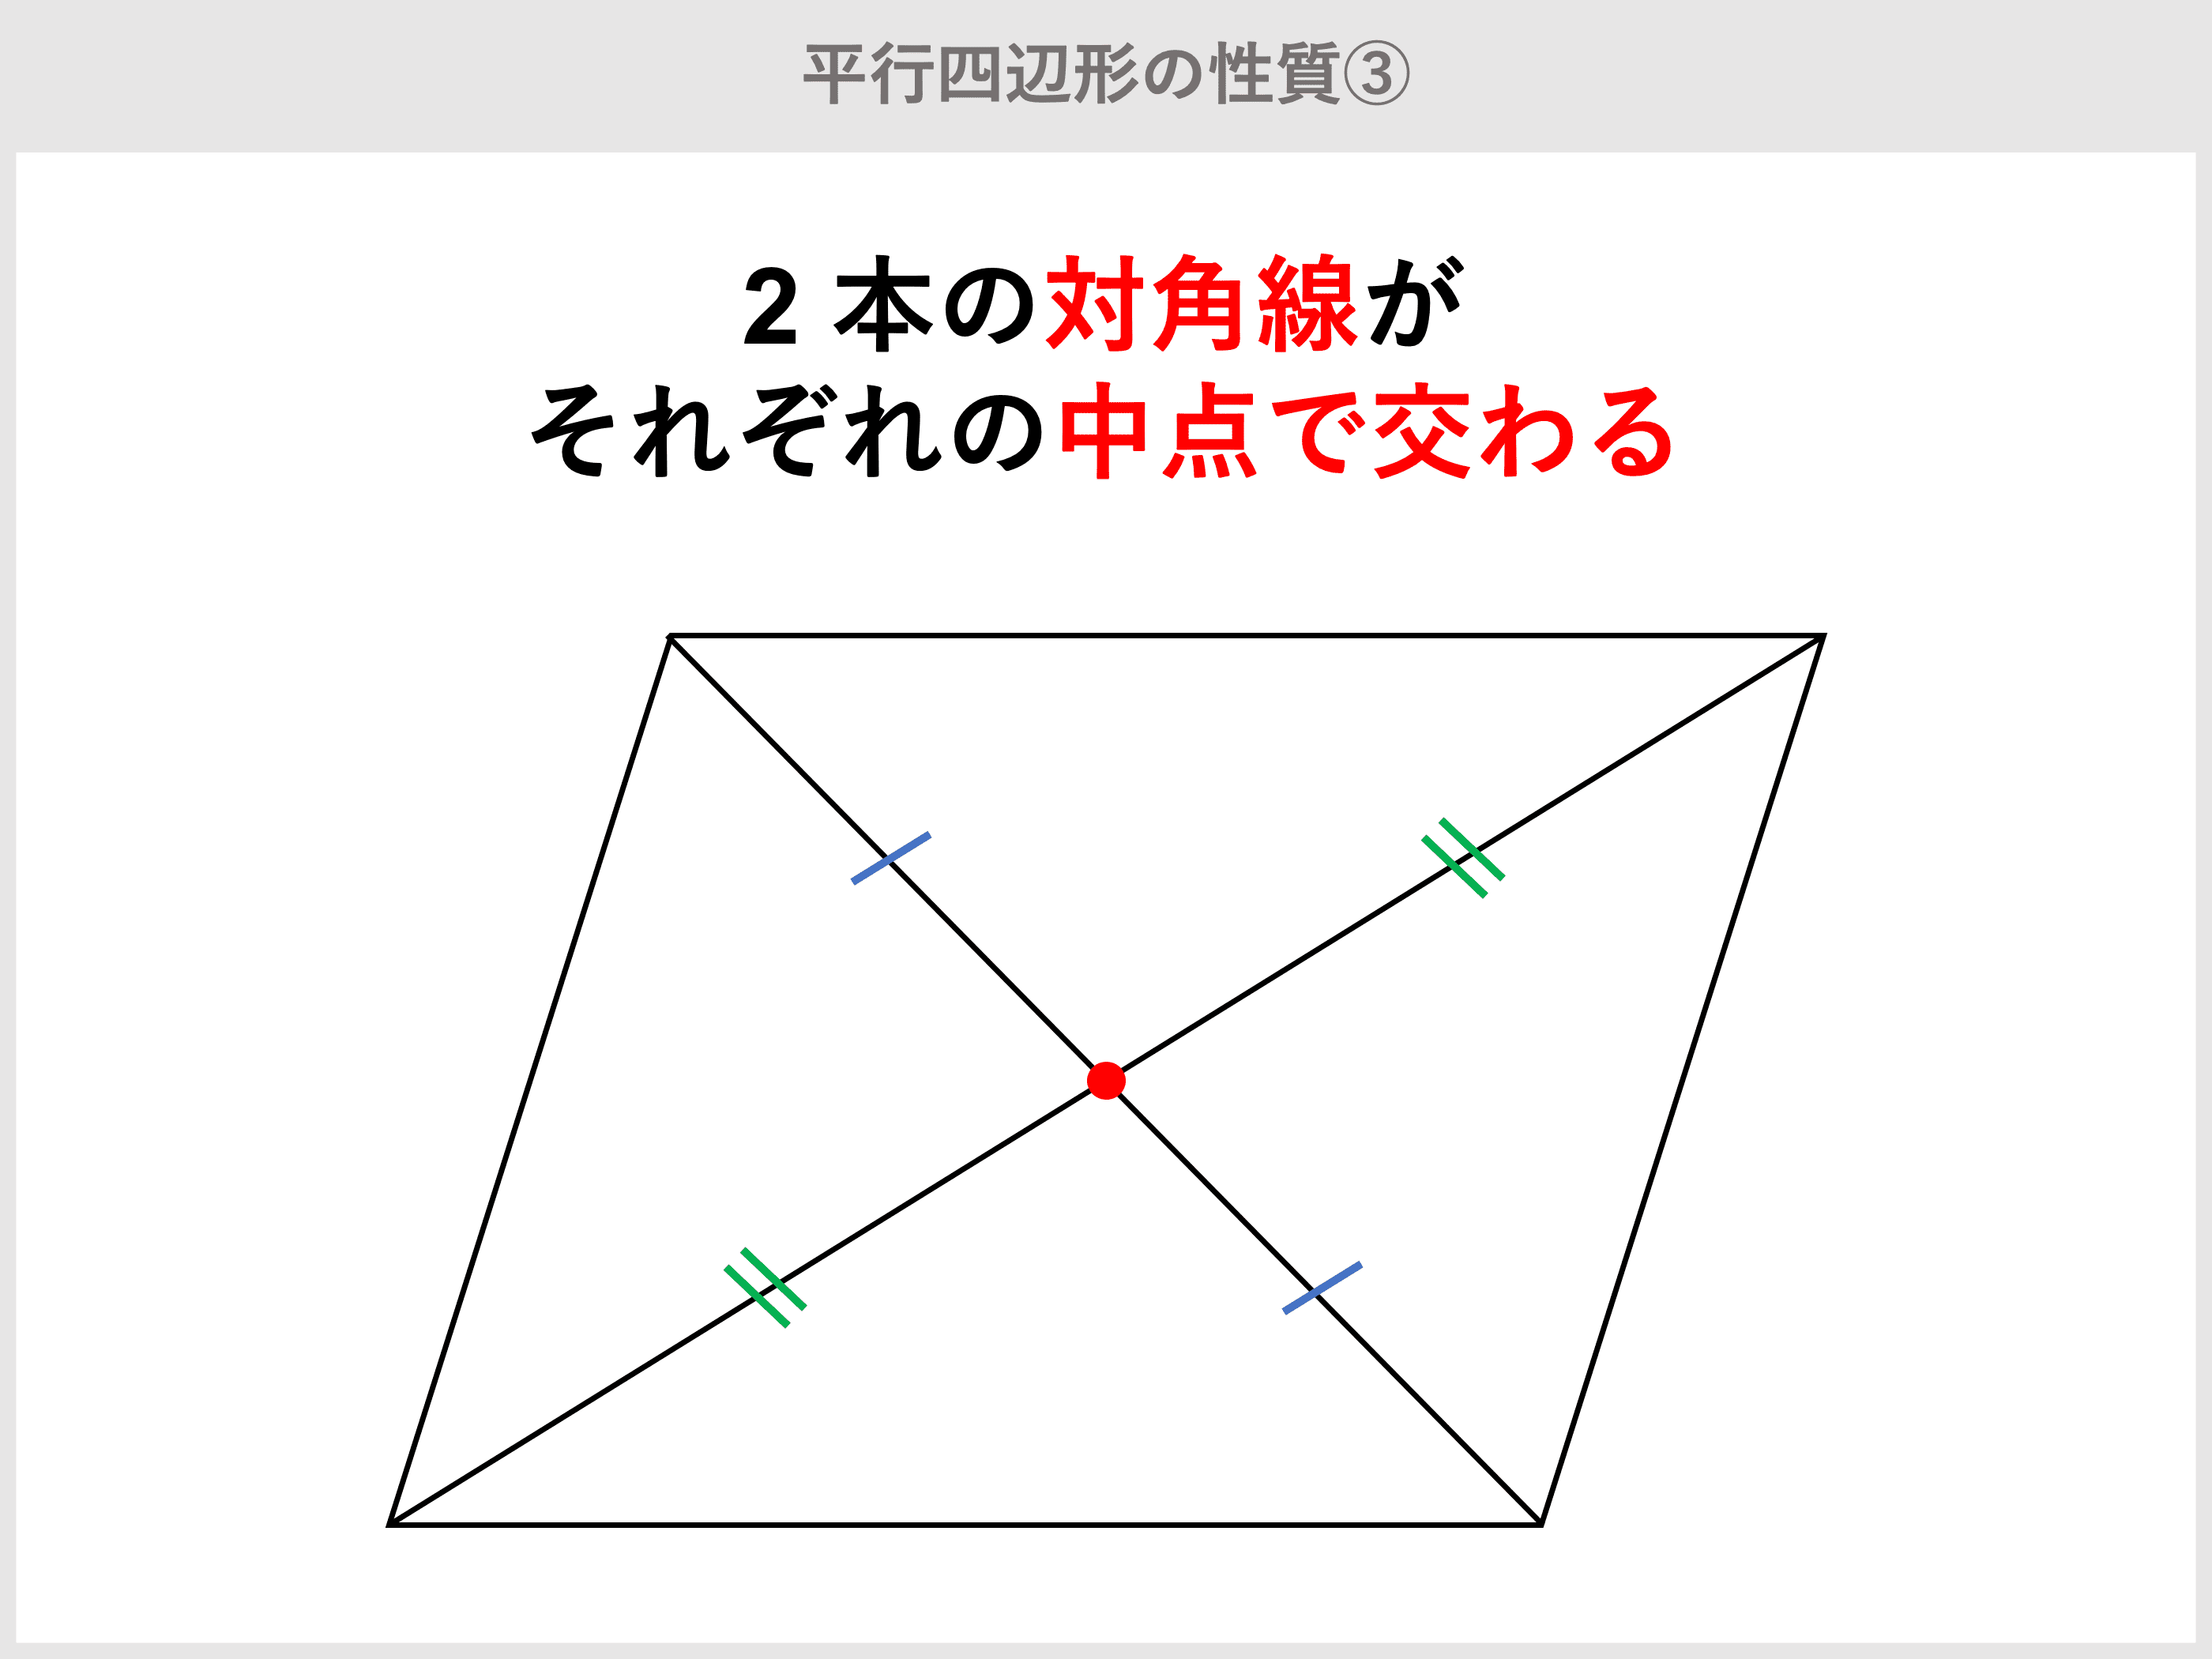 平行四辺形とは 定義 条件 性質や 面積の公式 対角線の角度の求め